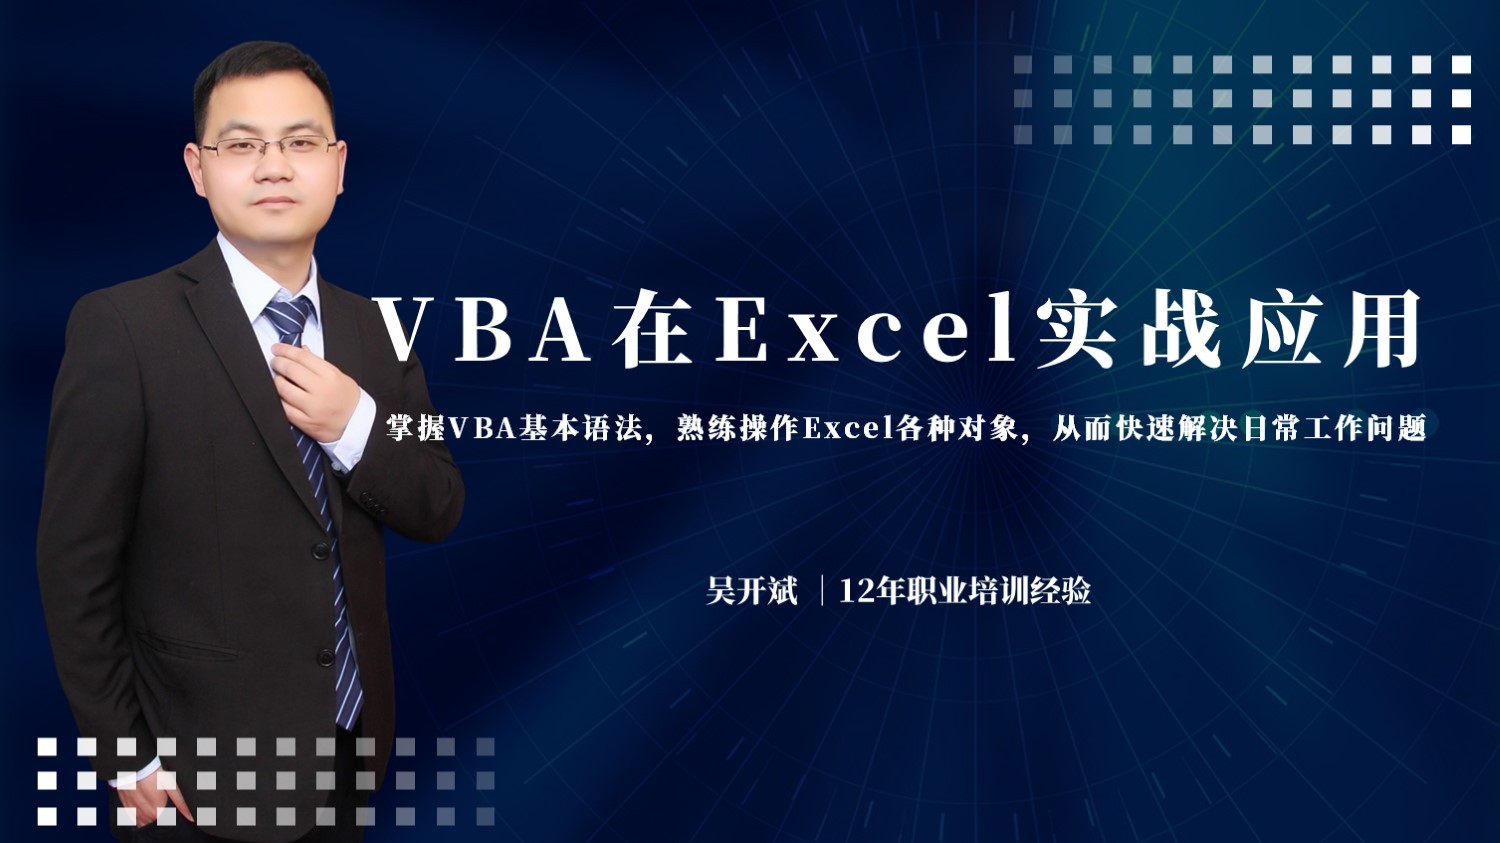 VBA在Excel中实战应用 零基础学习VBA